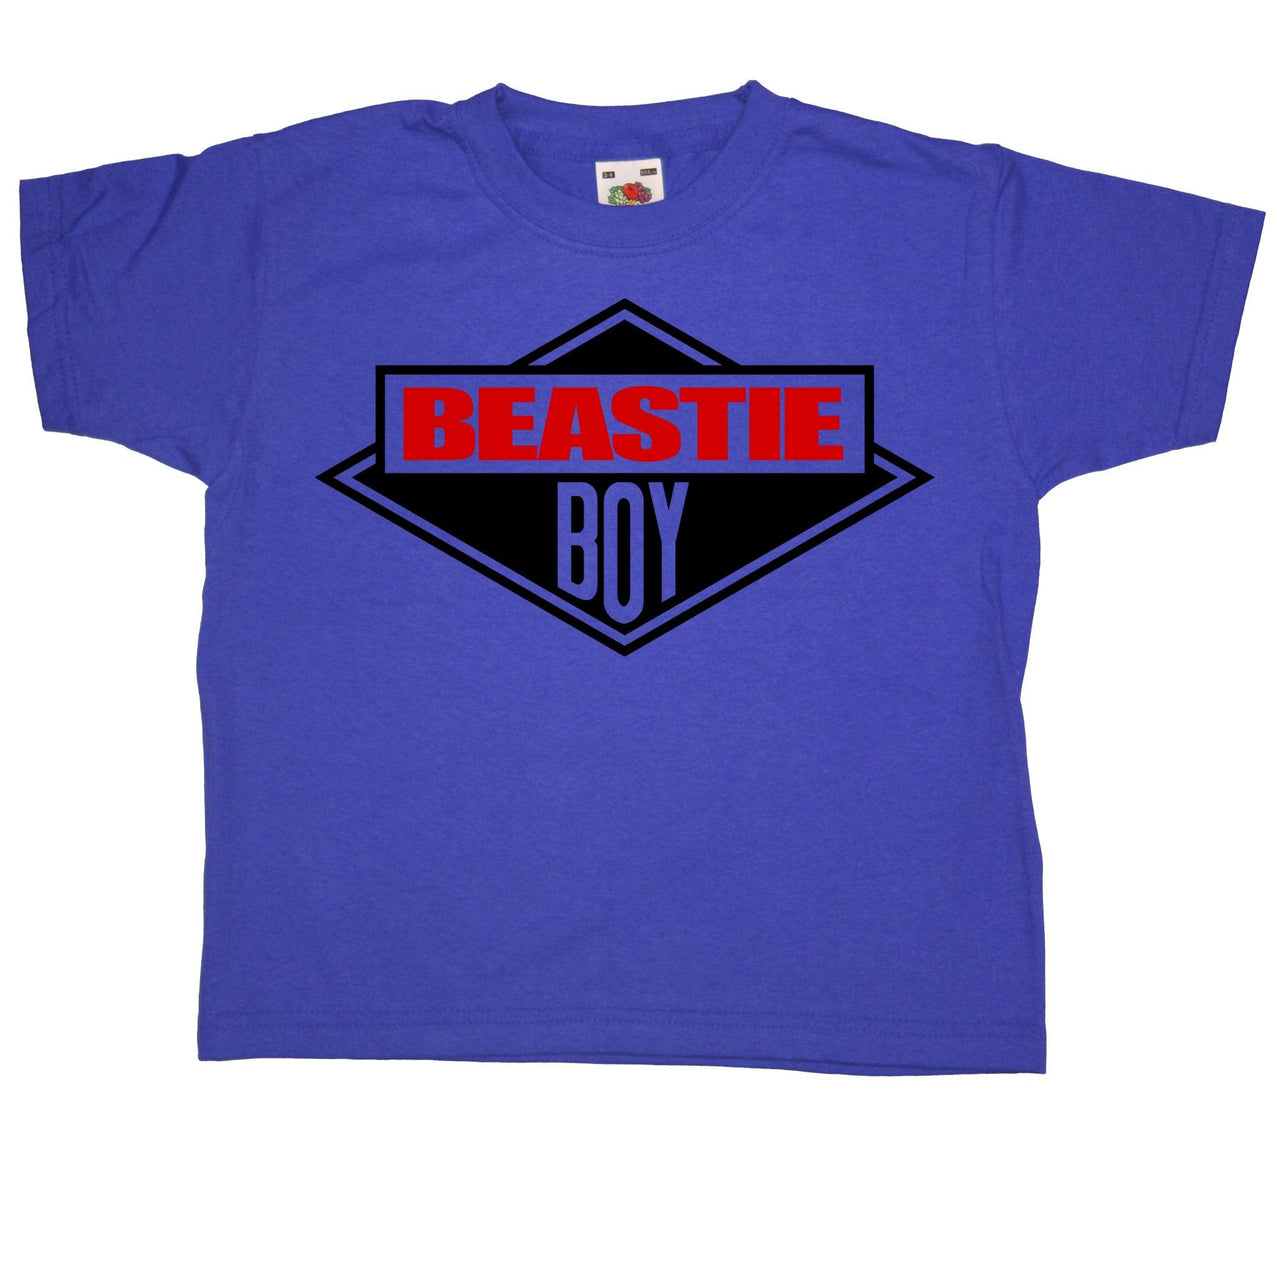 Beastie Boy Childrens T-Shirt 8Ball